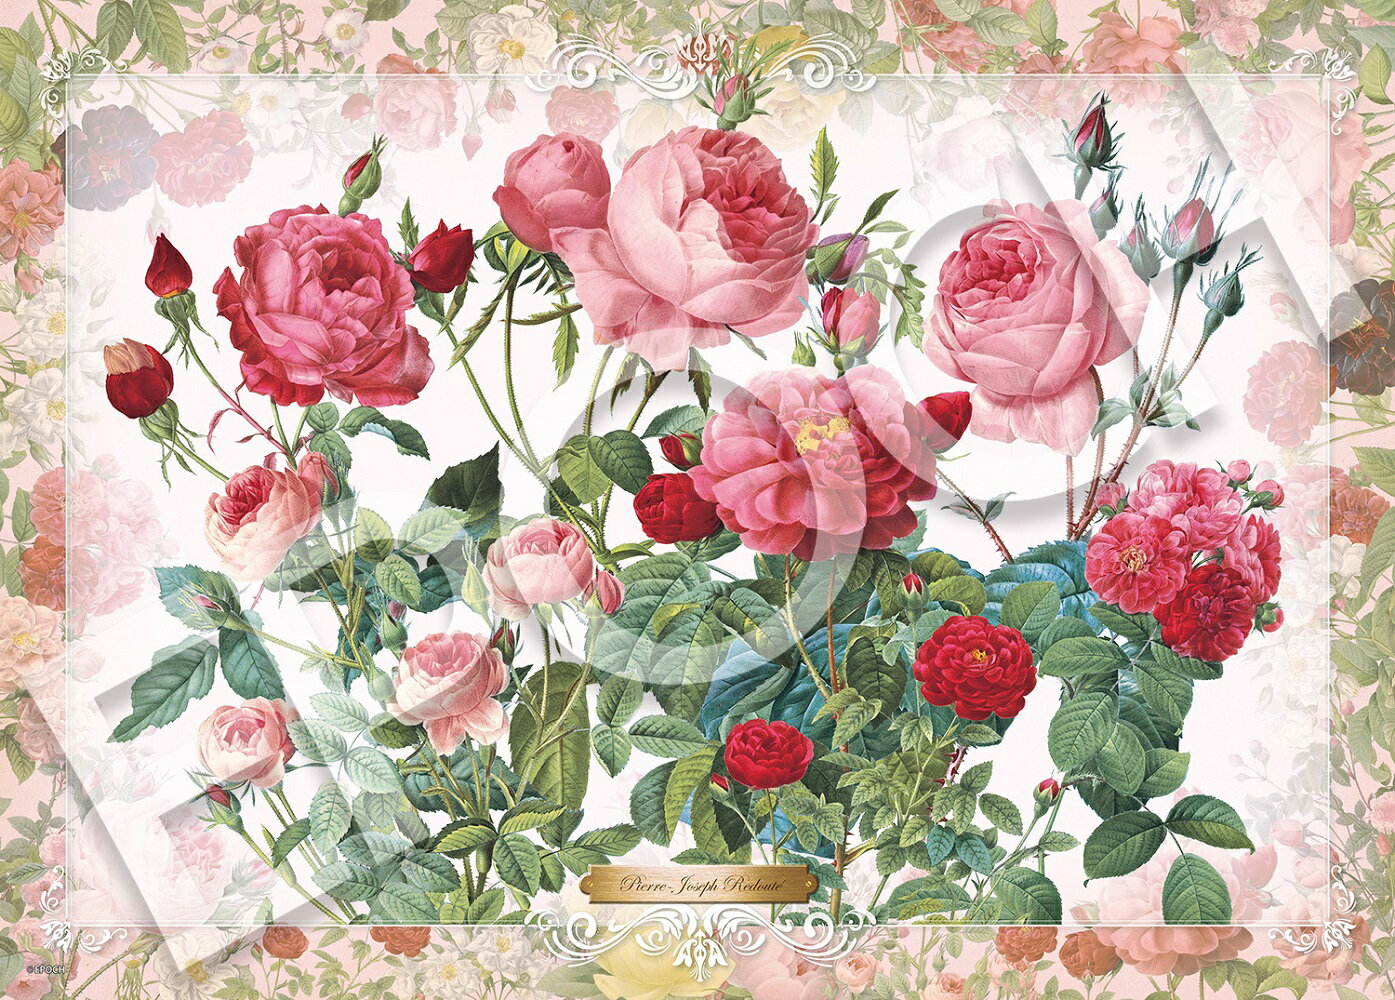 ジグソーパズル 薔薇の誘い 500ピース (38x53cm)